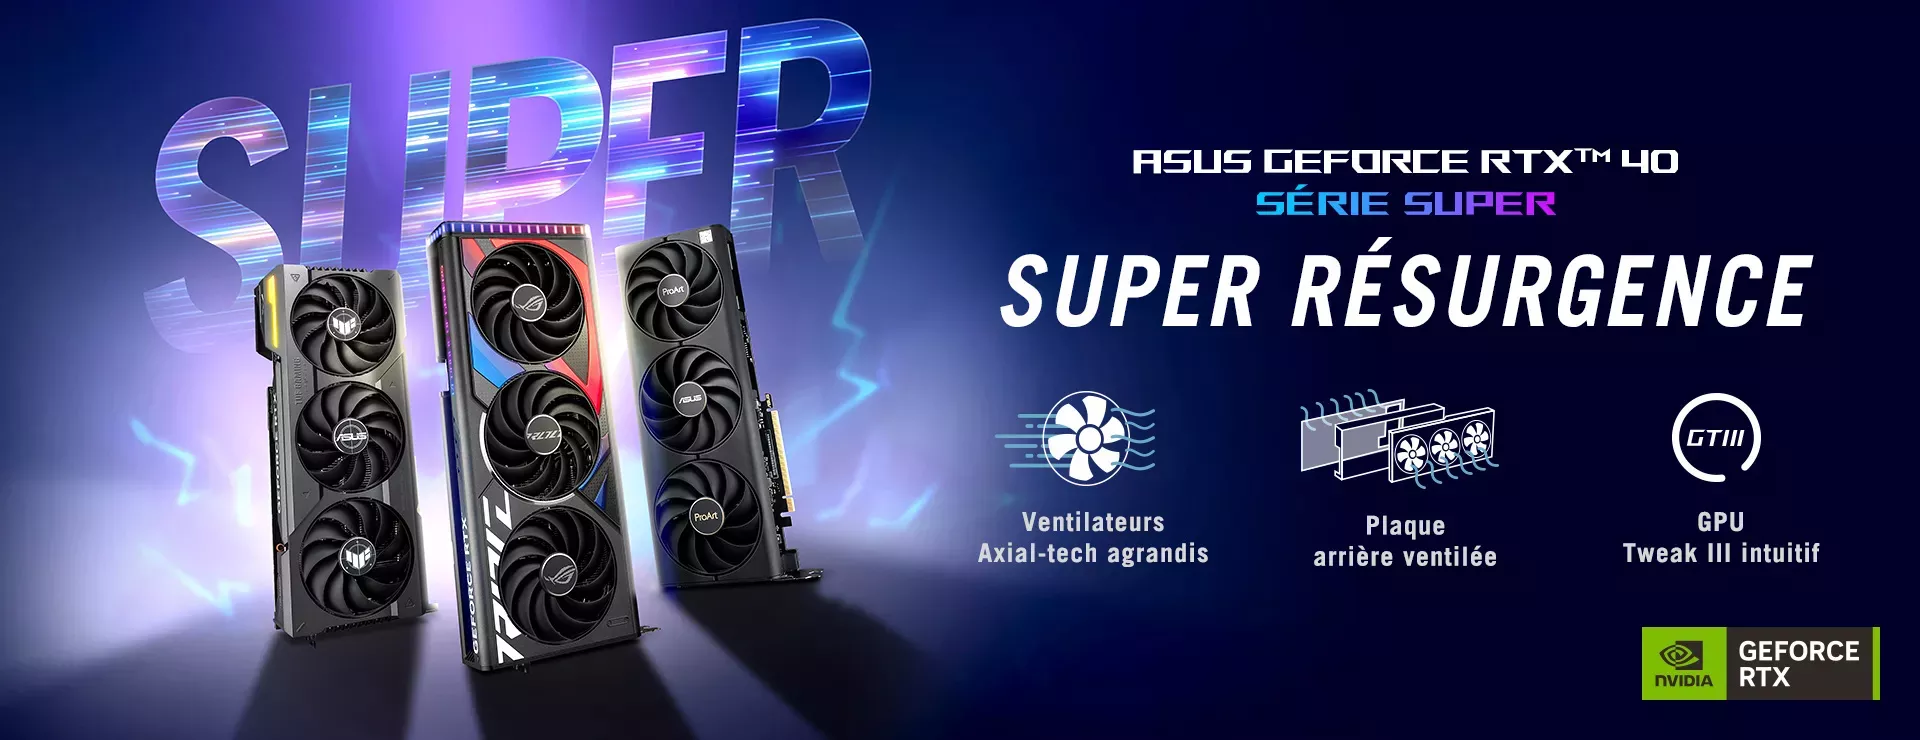 Asus Geforce RTX série Super